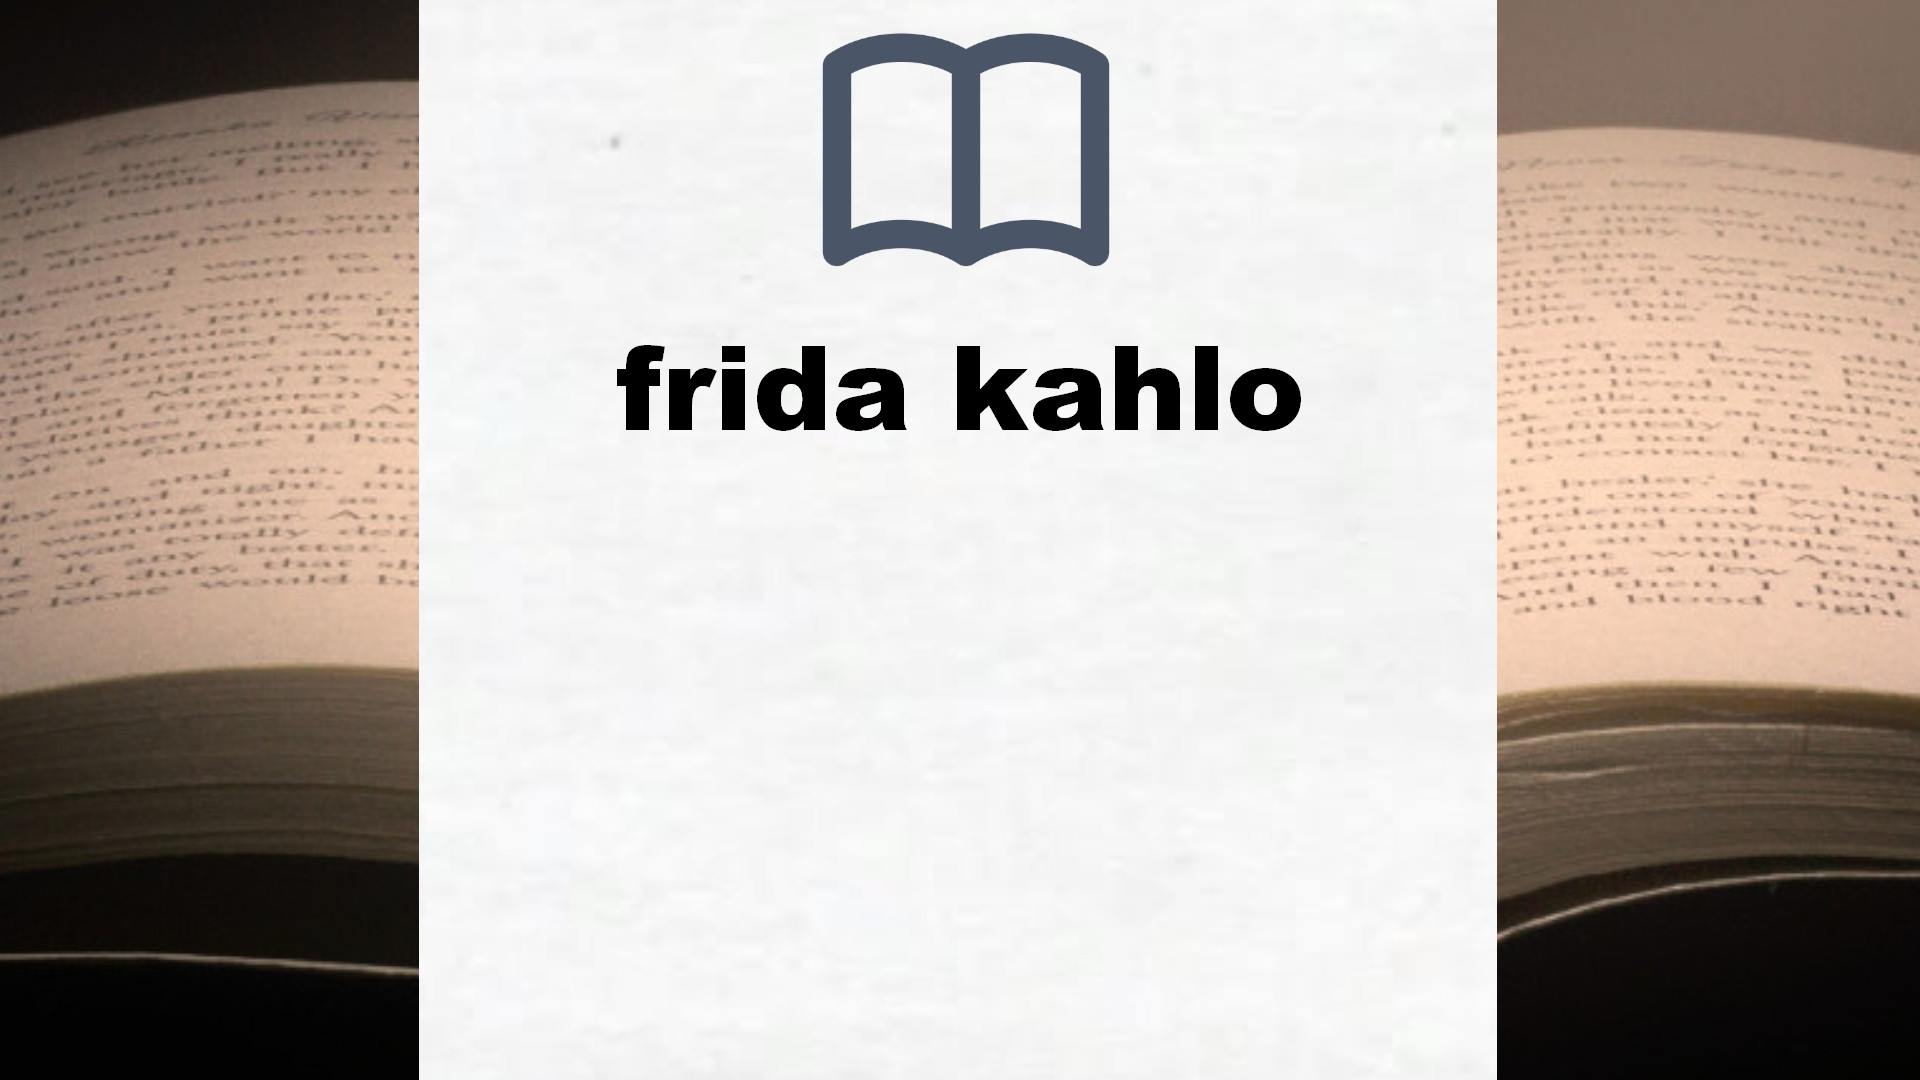 Libros sobre frida kahlo